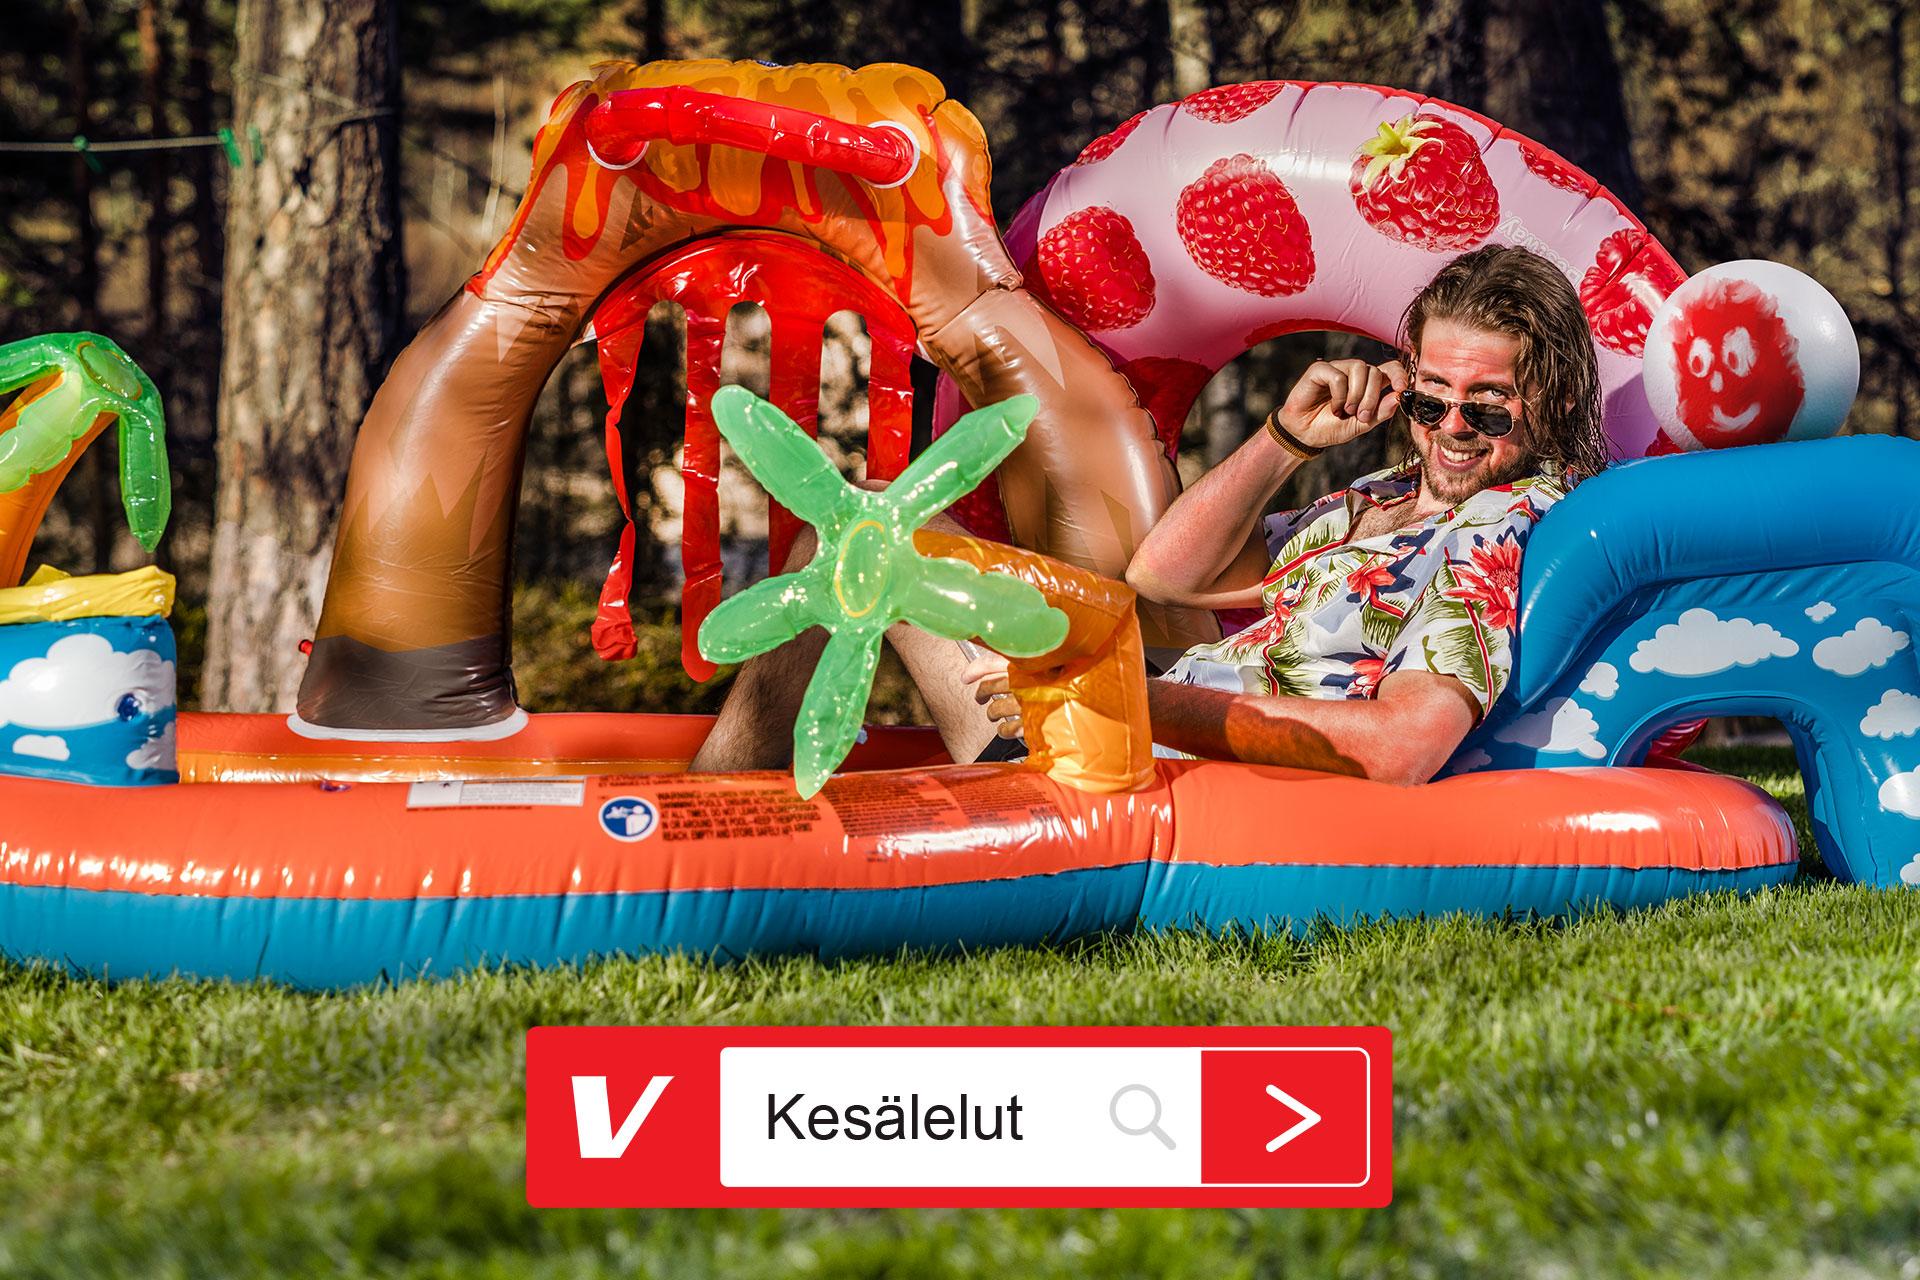 Hyvä lomailija, katso Verkkokaupasta 'Kesälelut'. Kuvassa kesästä nauttiva mies lasten uima-altaassa.